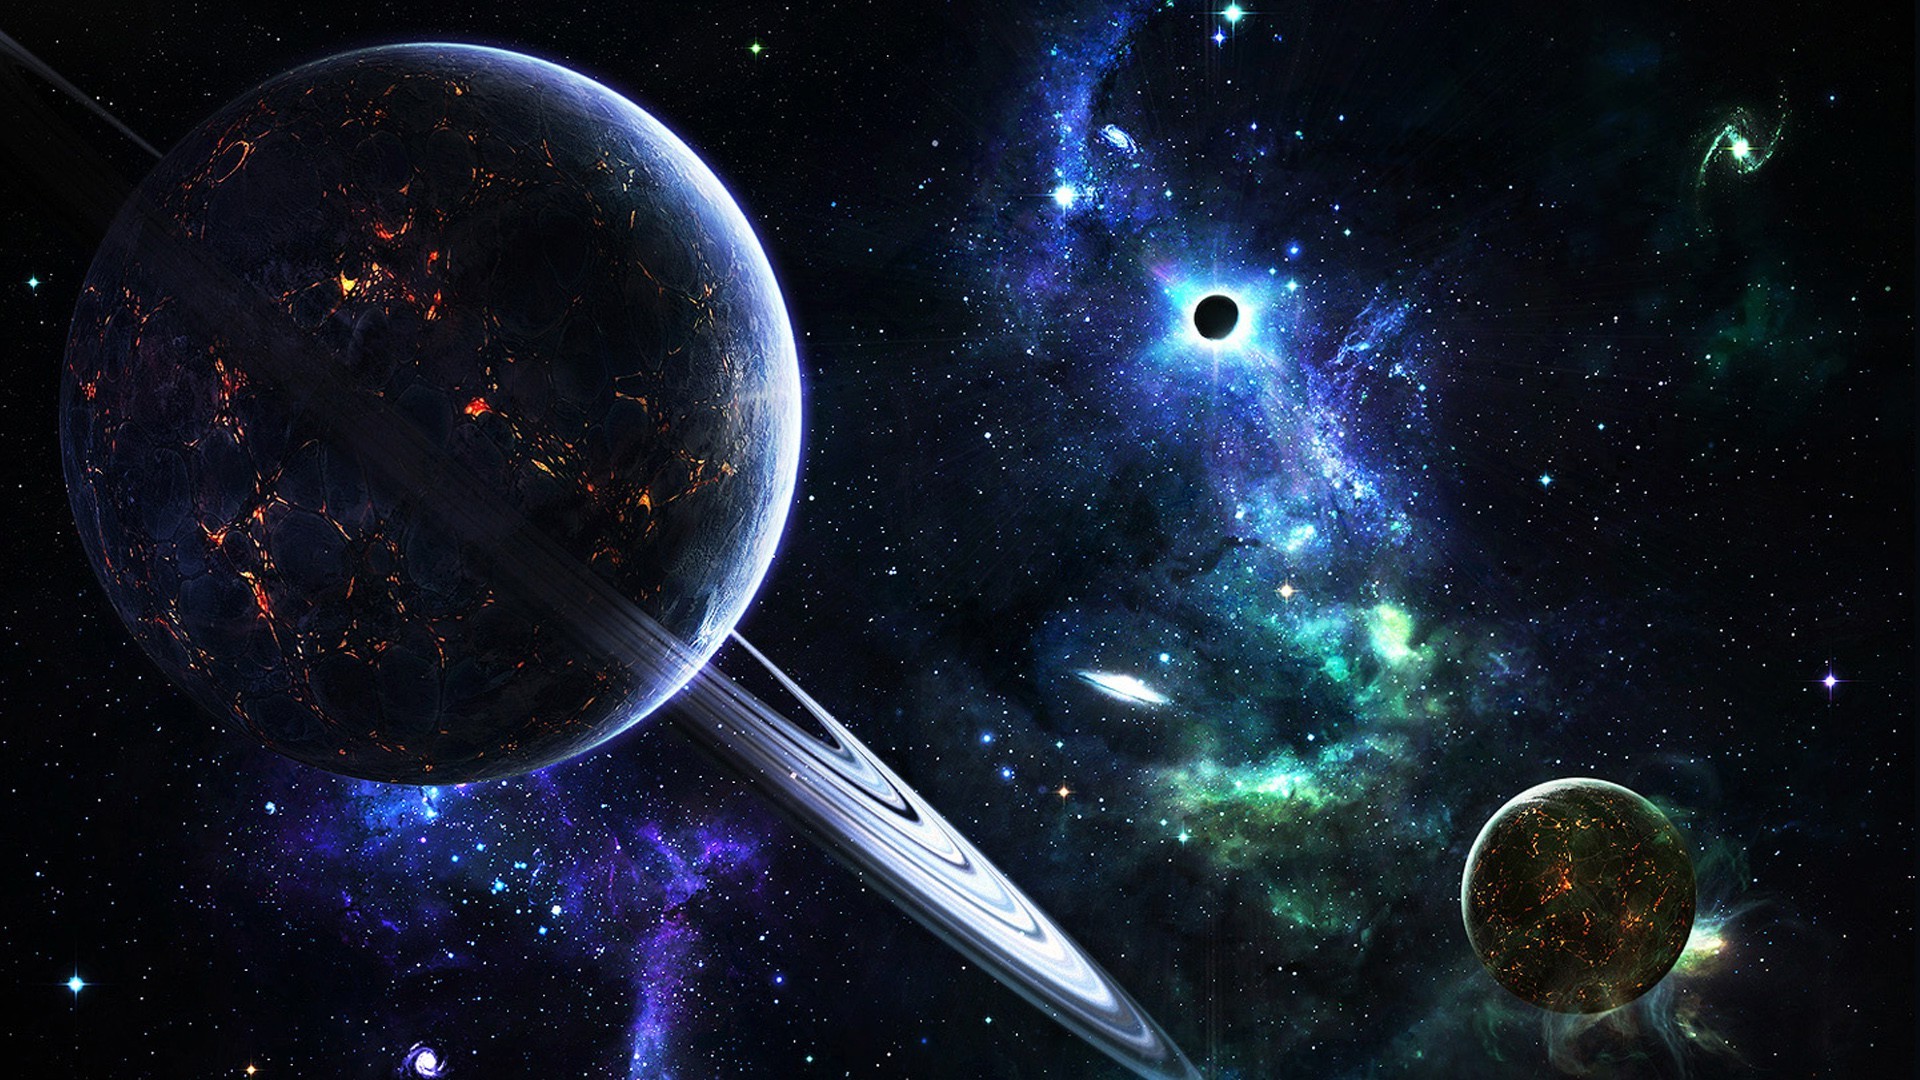 fond d'écran espacio hd,cosmos,objet astronomique,univers,espace,planète